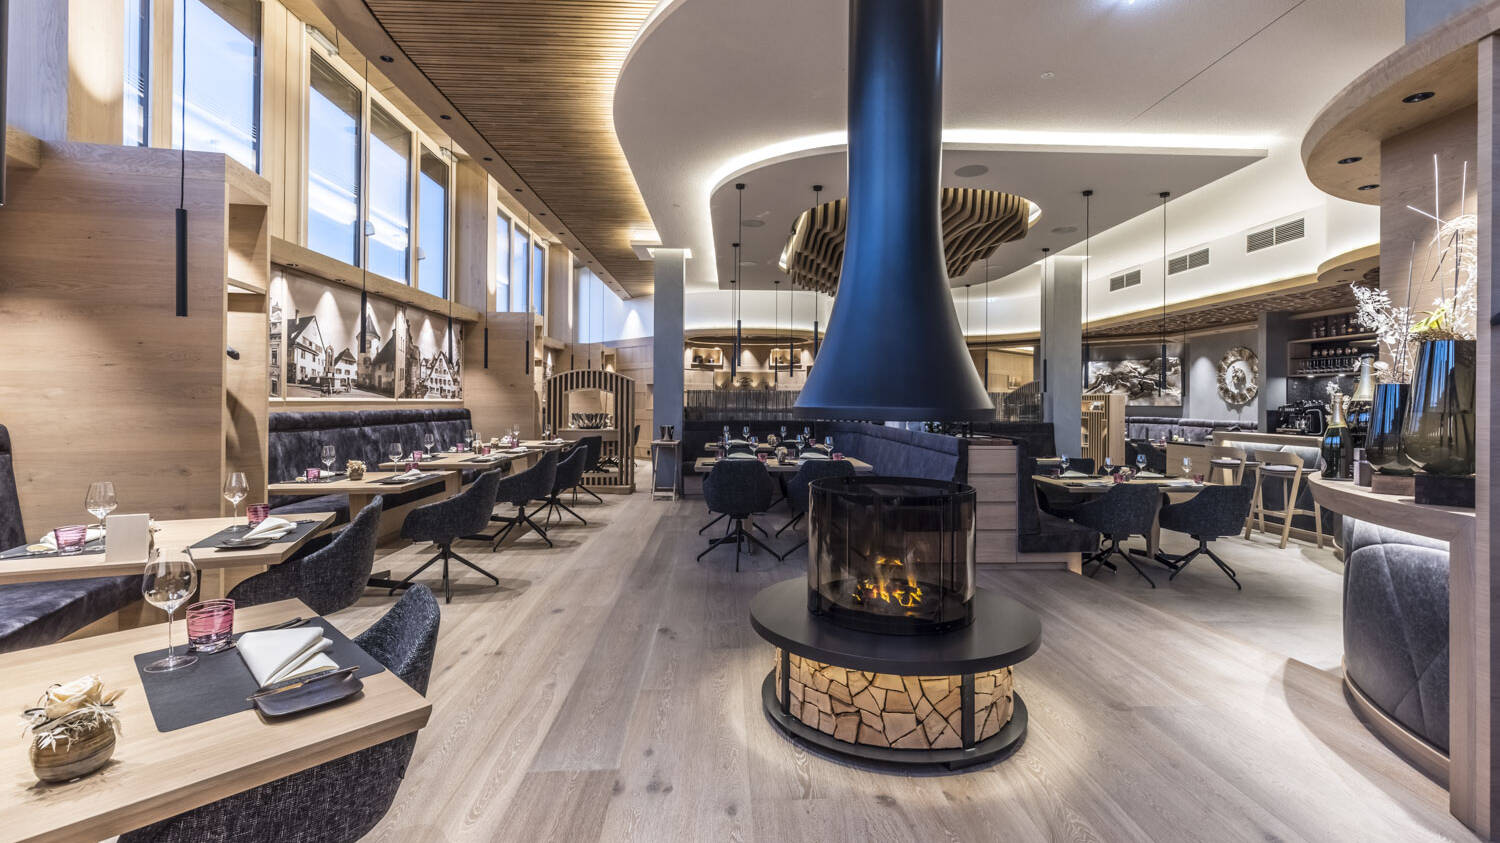 Runde Formen, viel Einsatz von Holzmaterialien und ein offener Holzofen in der Mitte des Raumes verleihen dem Restaurant eine zugleich heimelige und elegante Atmosphäre.